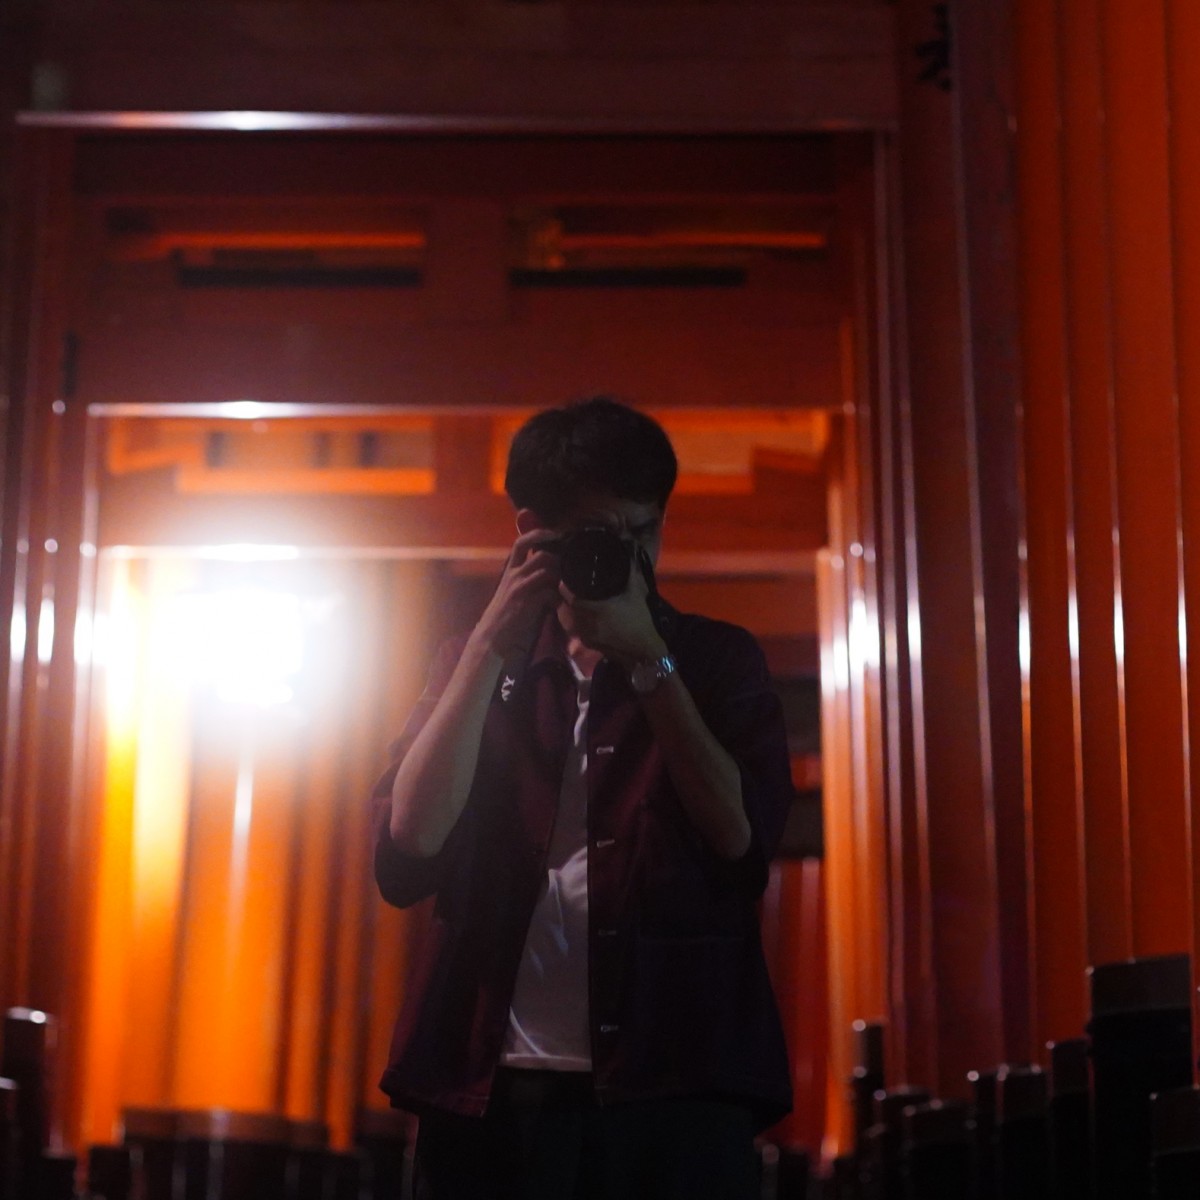 伏見稲荷の鳥居の中央でカメラを構えているしょへの写真。